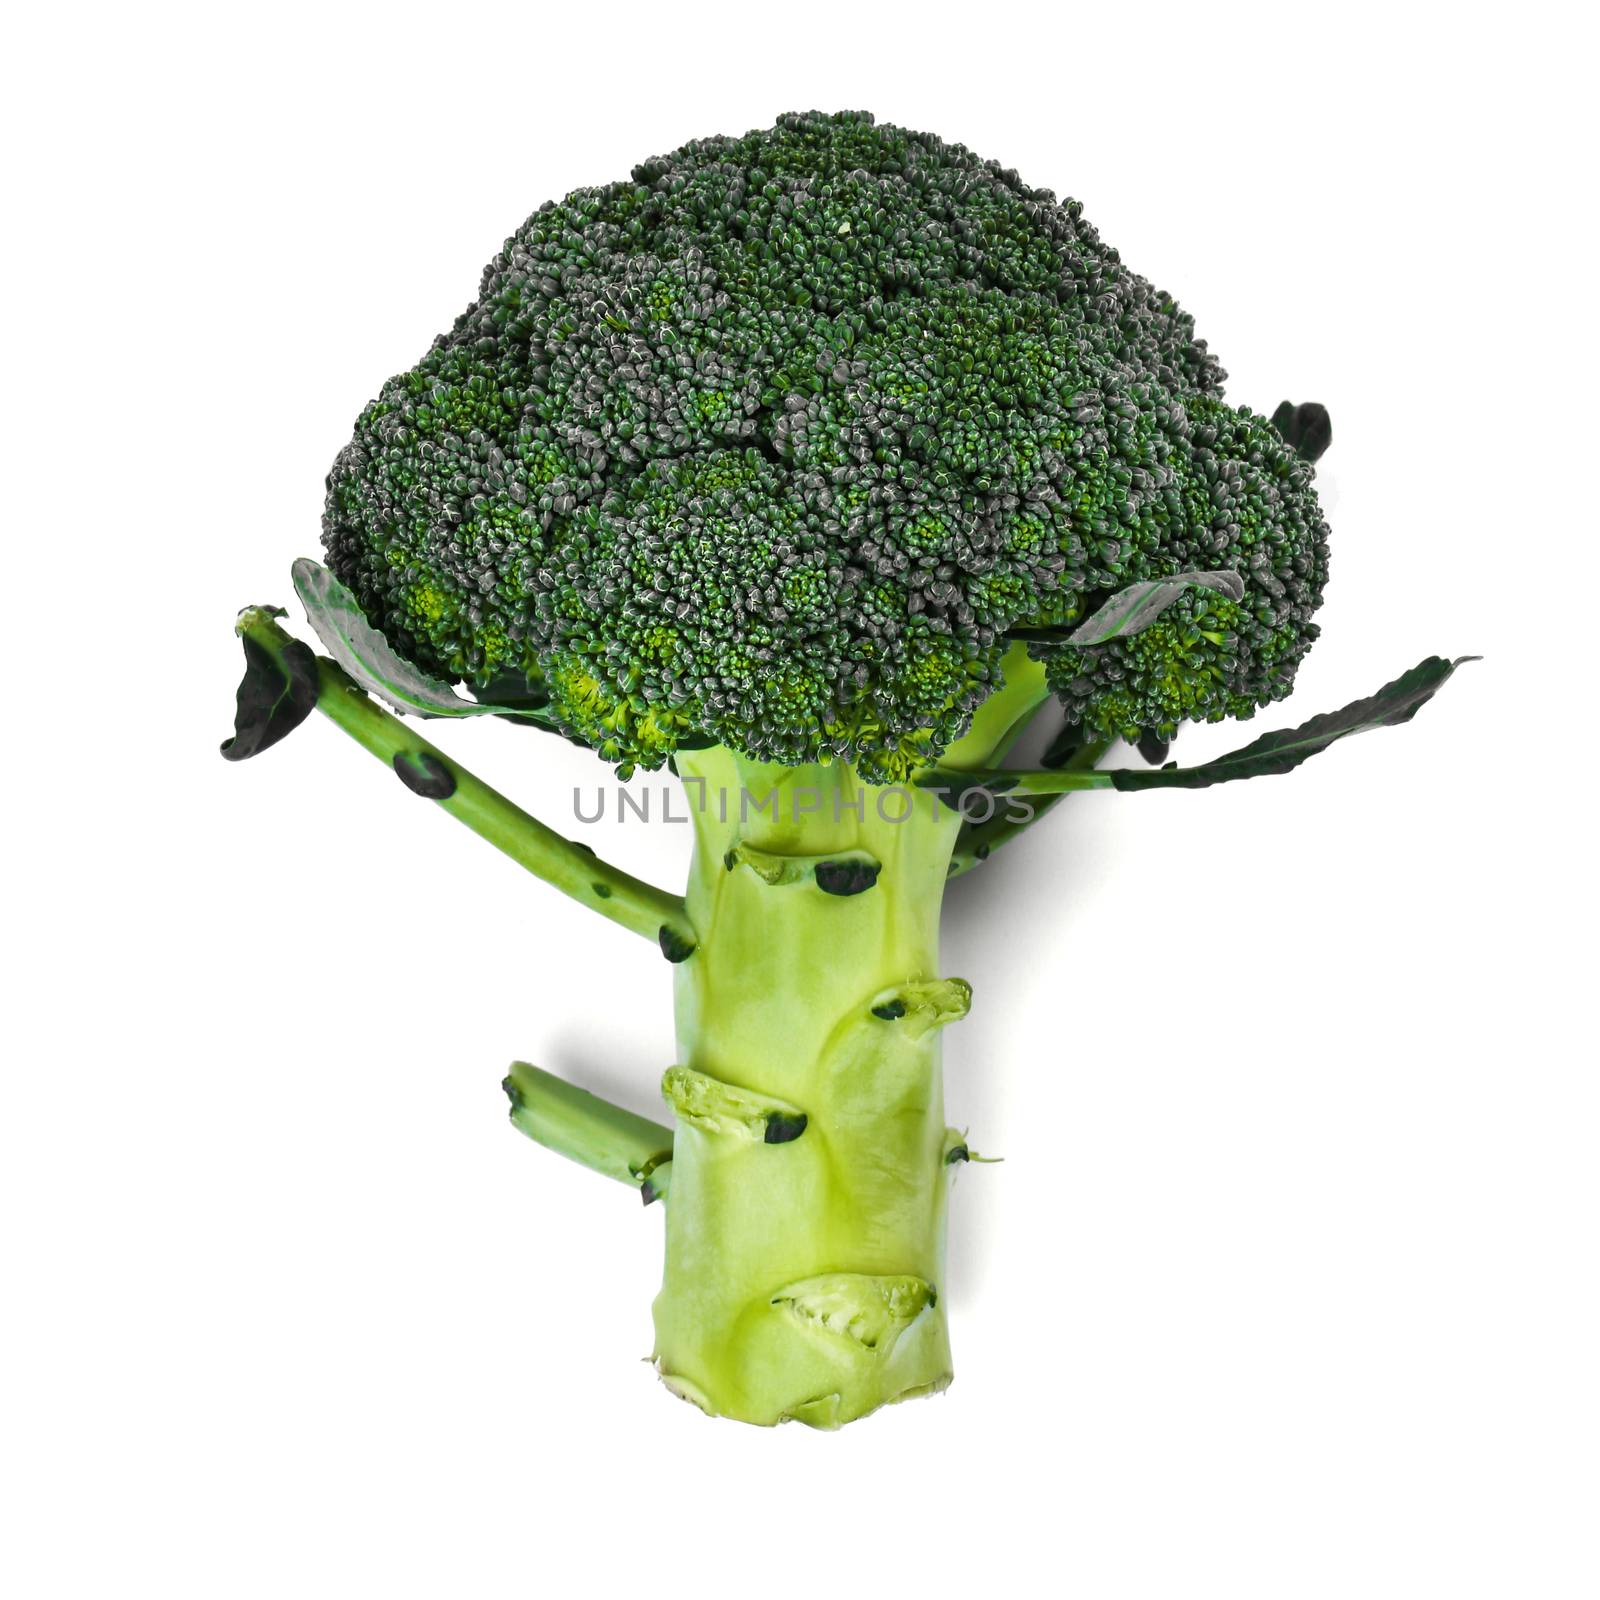 Delicious broccoli by rufatjumali